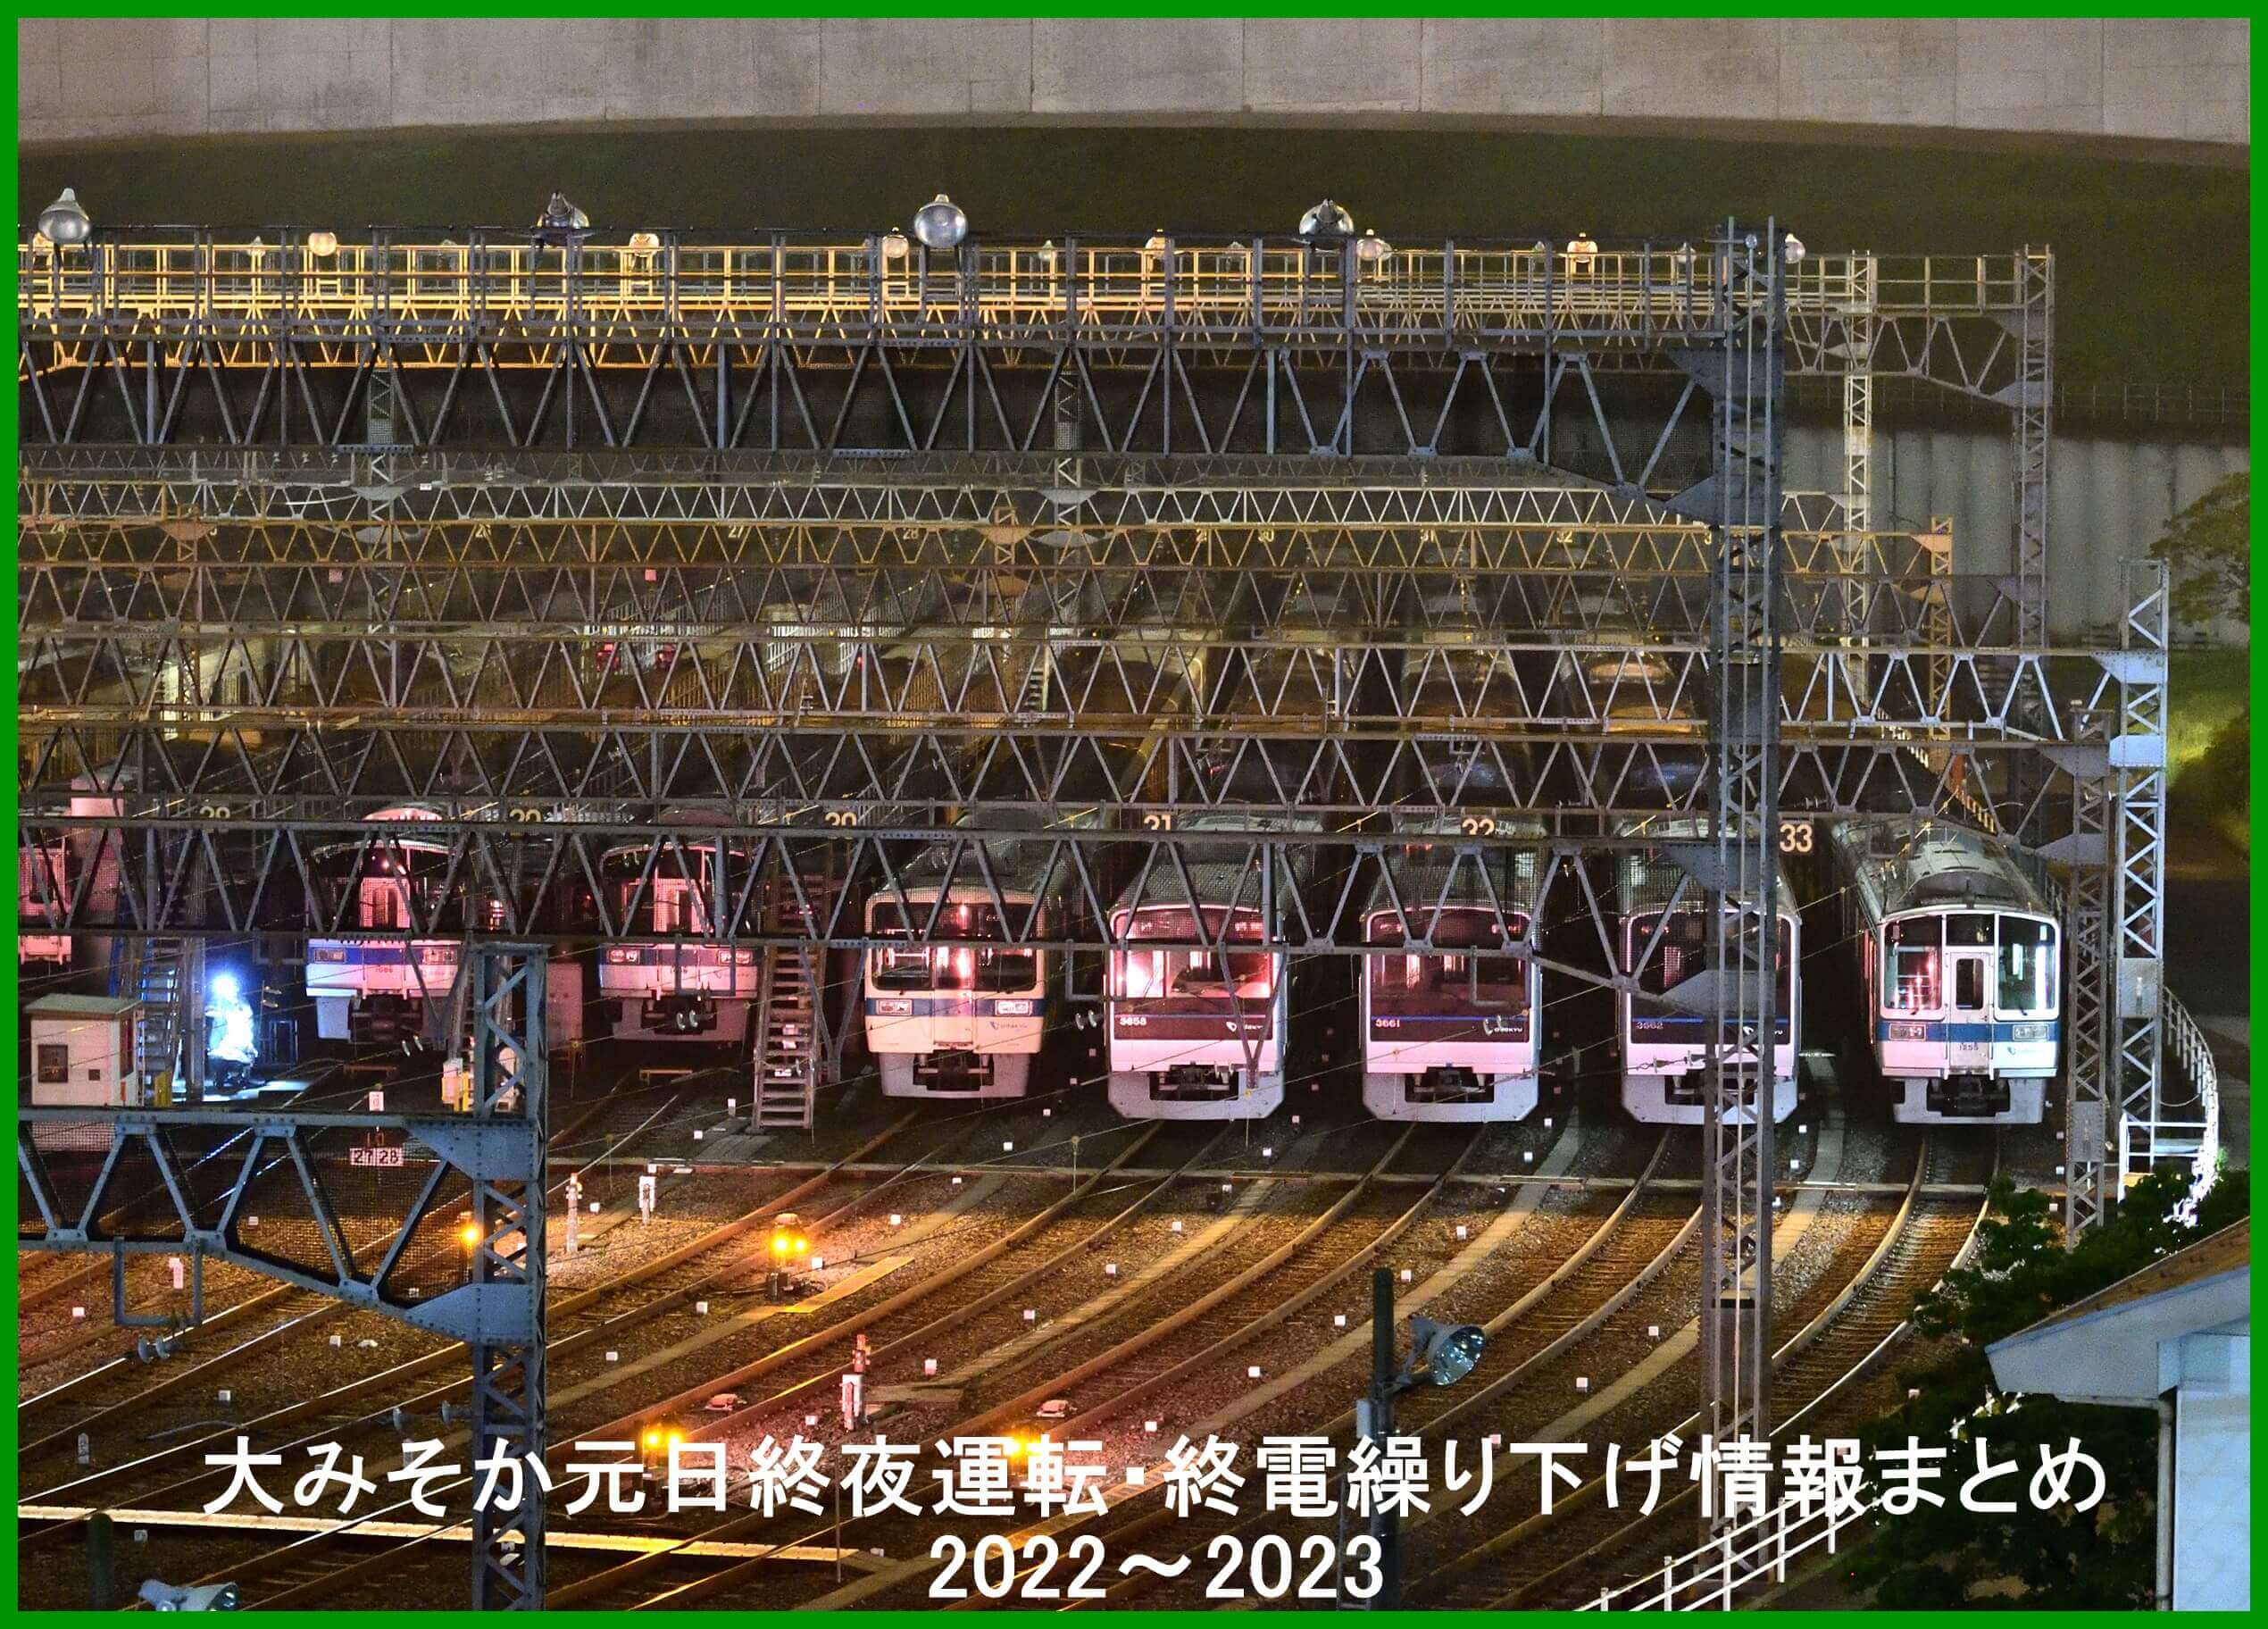 [資訊] 2022~2023年東京跨年夜凌晨電車行駛情報